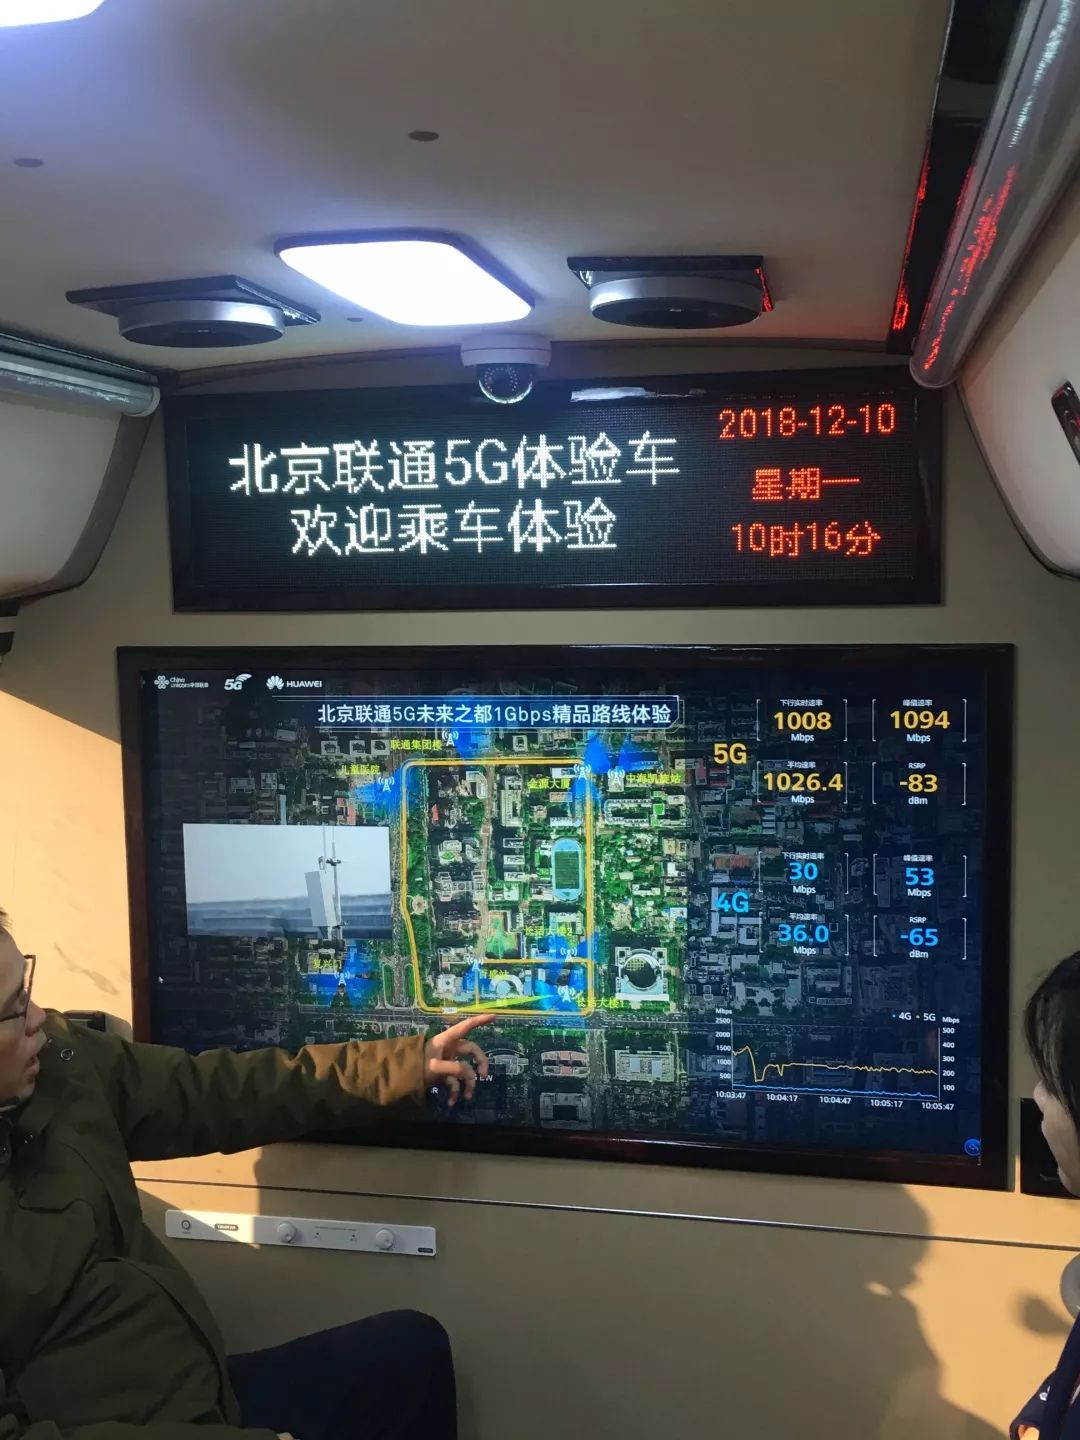 加速建设迎接5G商用 北京联通5G畅快体验